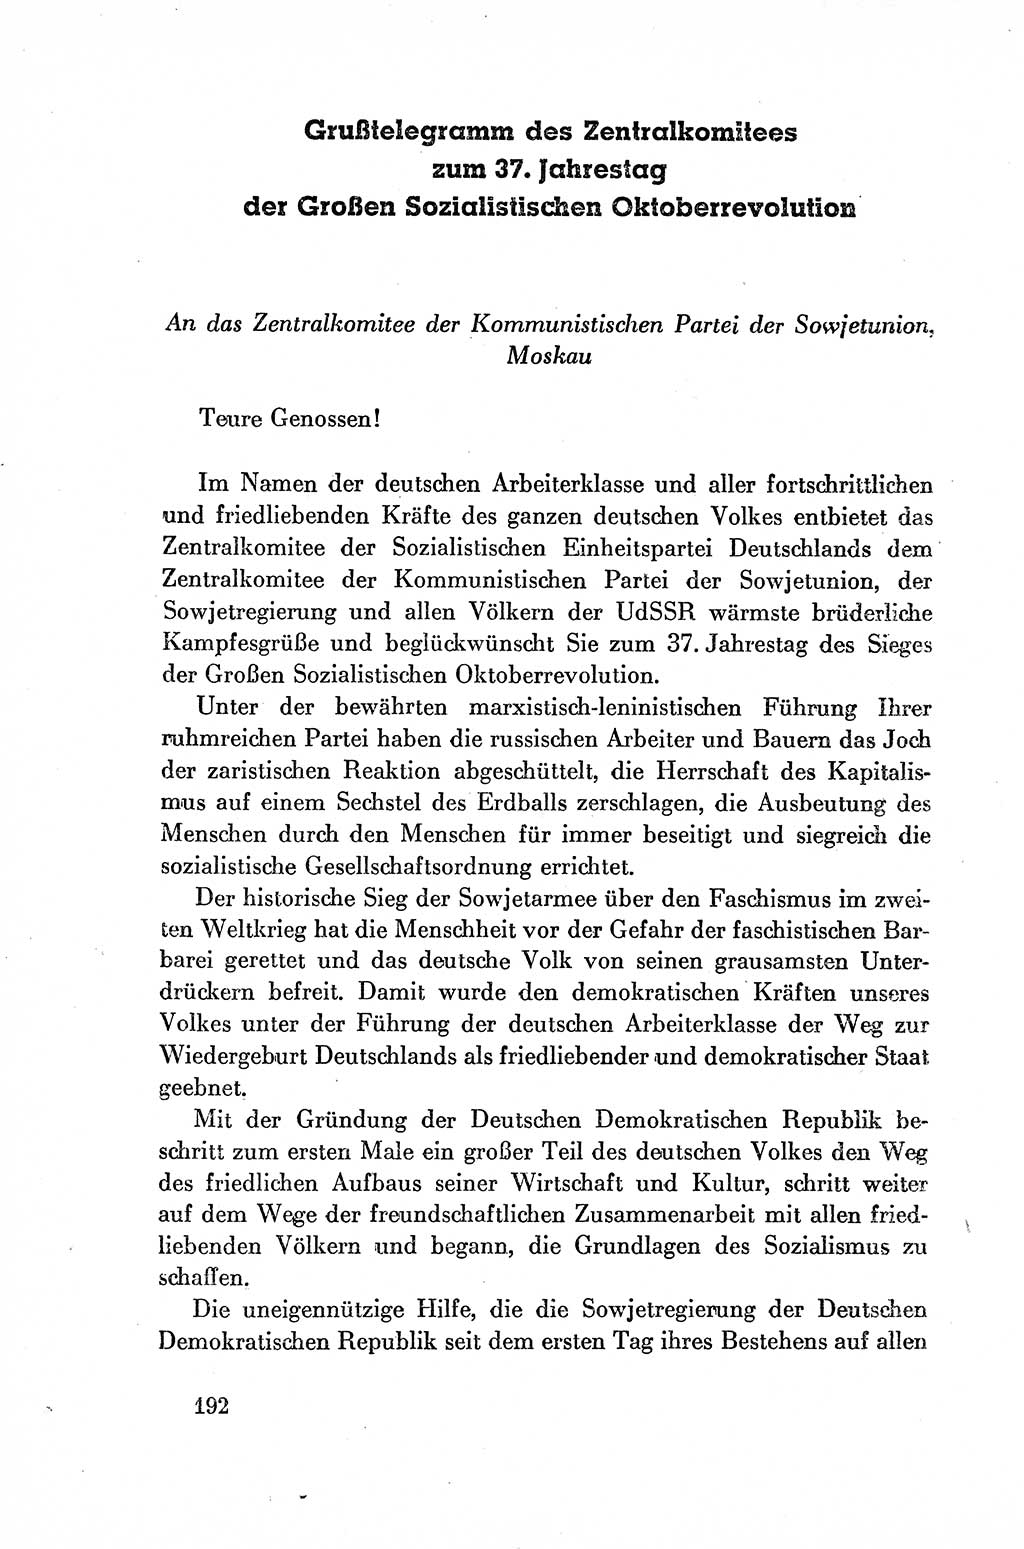 Dokumente der Sozialistischen Einheitspartei Deutschlands (SED) [Deutsche Demokratische Republik (DDR)] 1954-1955, Seite 192 (Dok. SED DDR 1954-1955, S. 192)